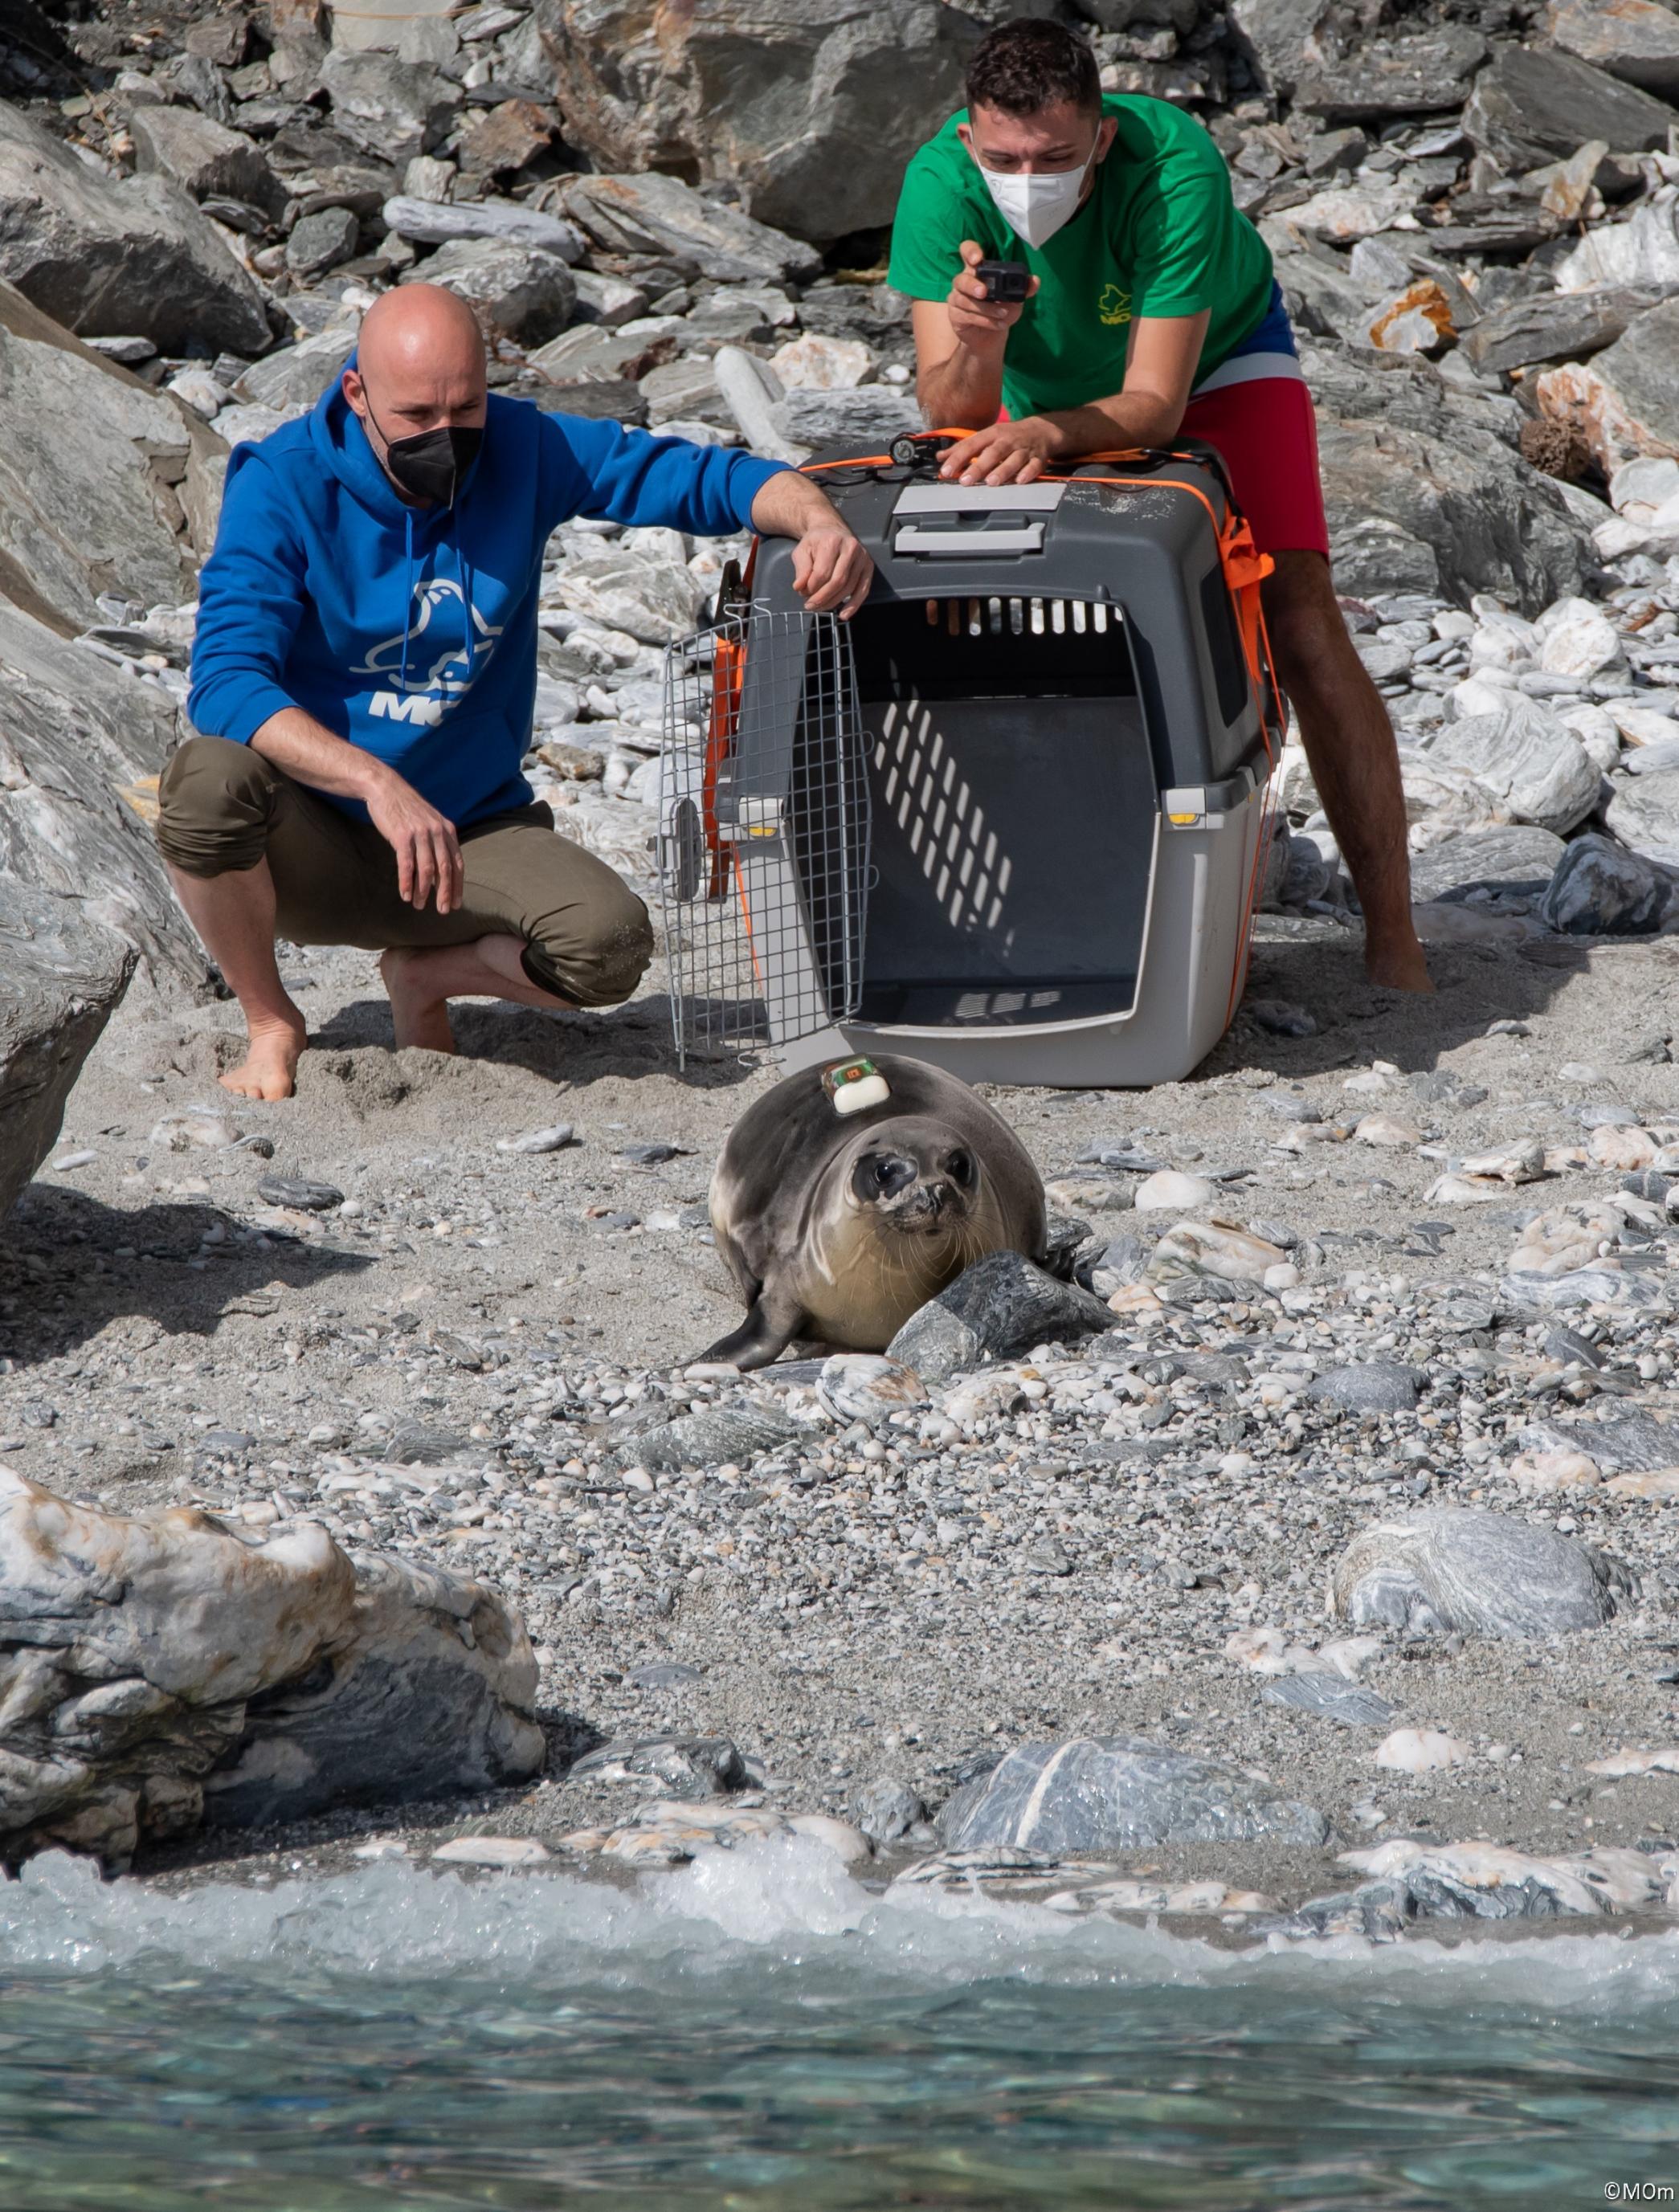 Eine kleinen Robbe hat einen Käfig verlassen und robbt am Strand in Richtung Meer. Im Hintergrund beobachten zwei Männer der Schutzorganisation Mom die Szene.